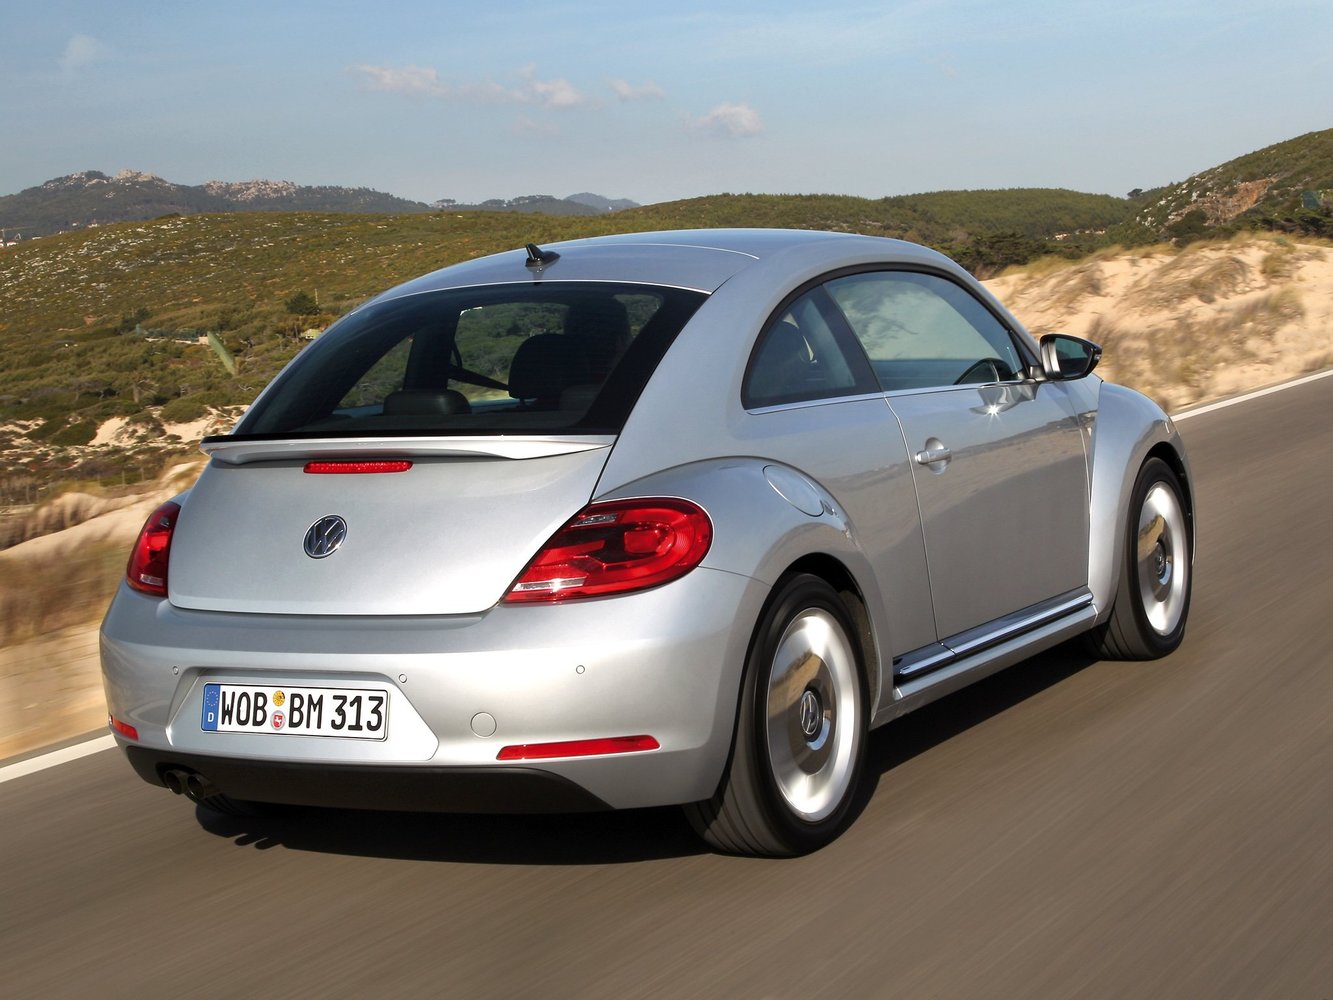 хэтчбек 3 дв. Volkswagen Beetle 2013 - 2016г выпуска модификация 1.4 AMT (150 л.с.)